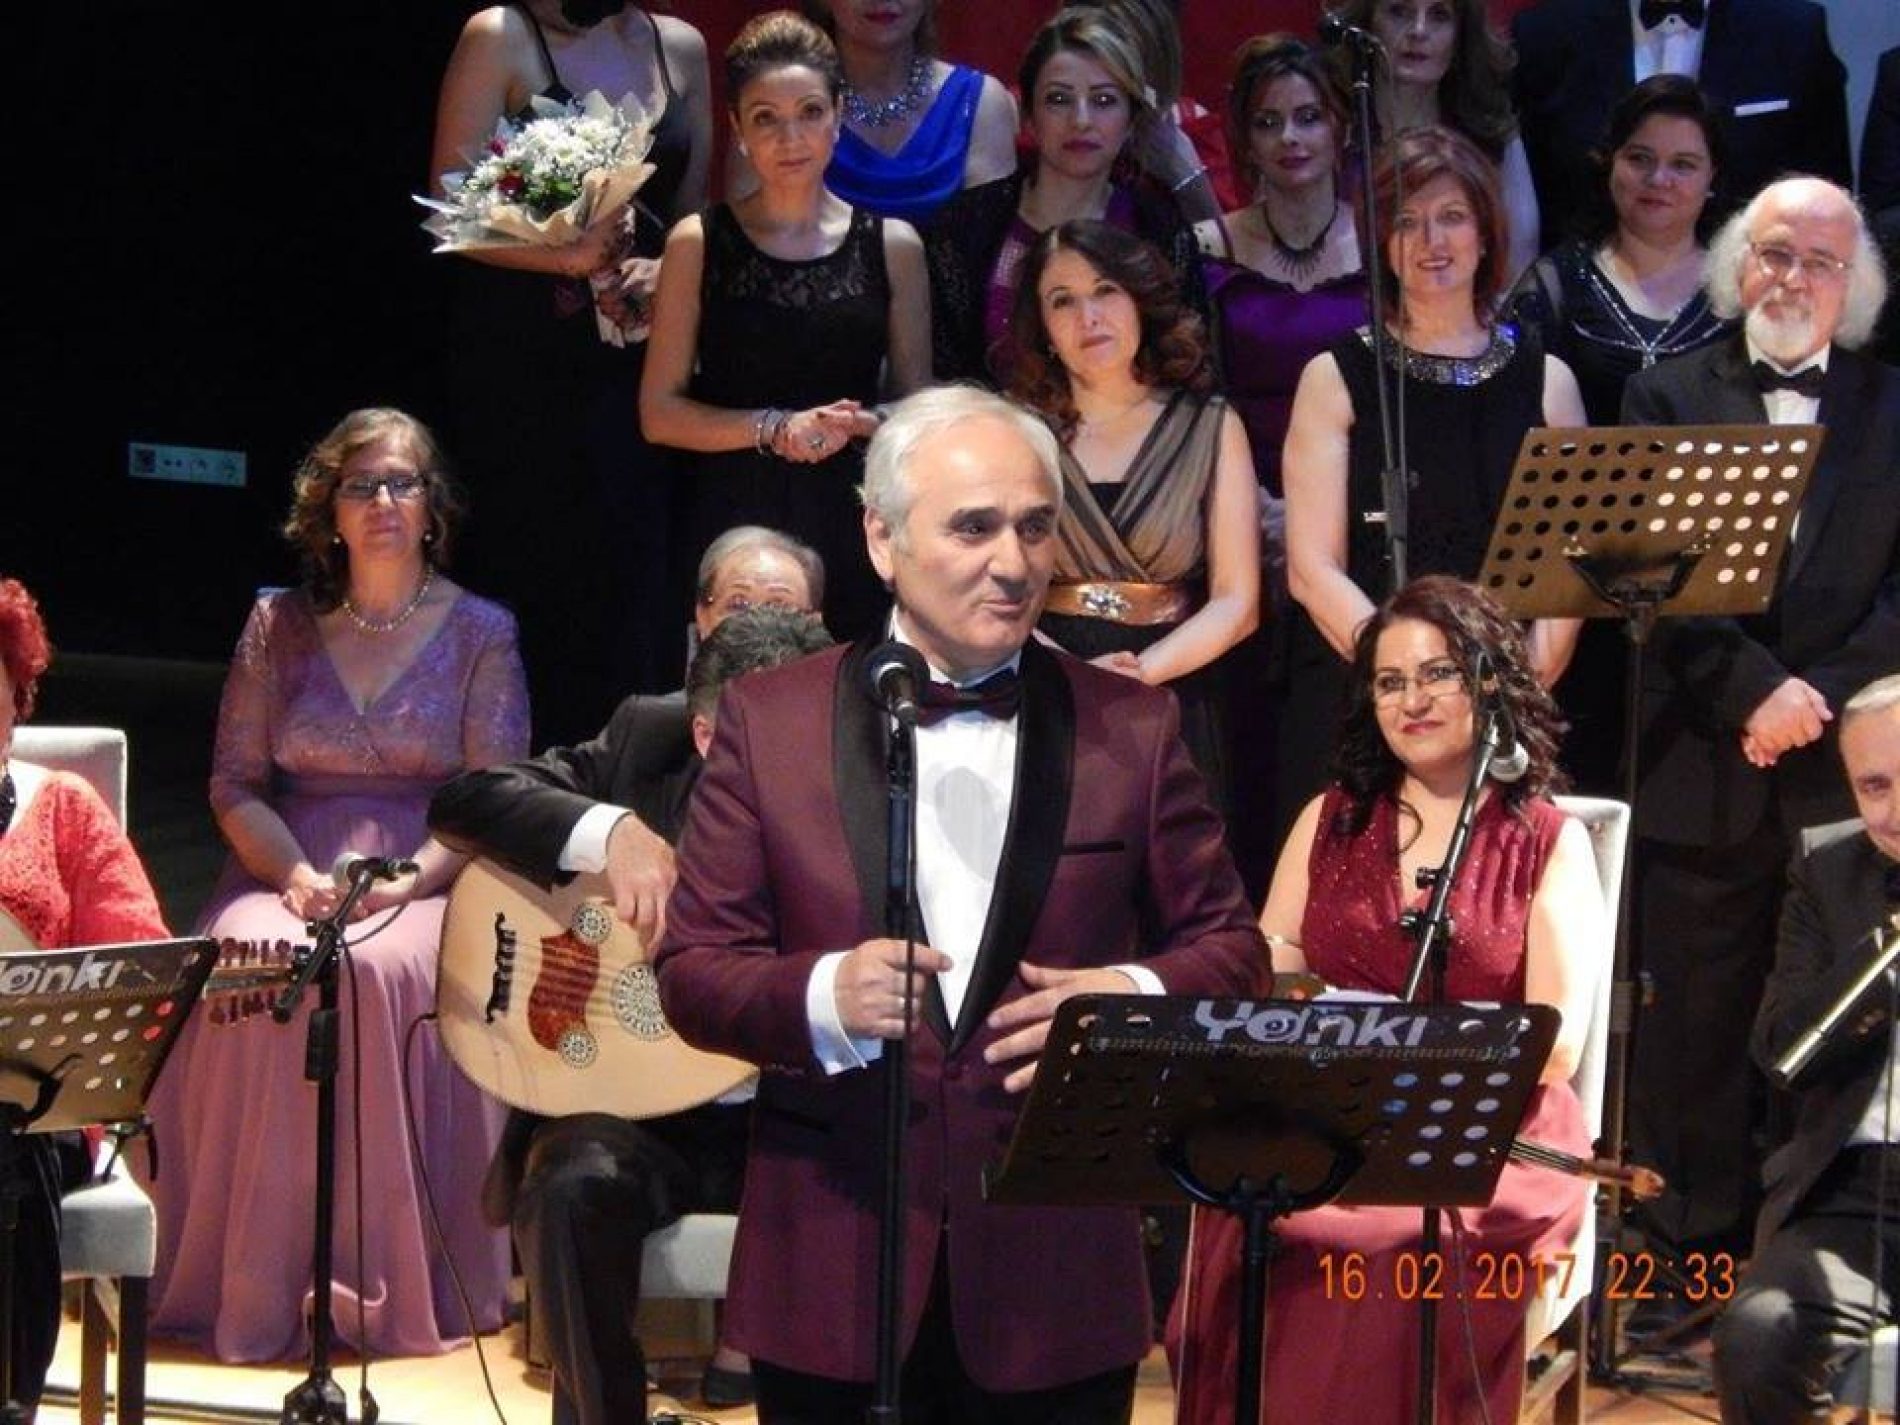 TBD Ankara Şubesi “Kış Güneşi” Konseri